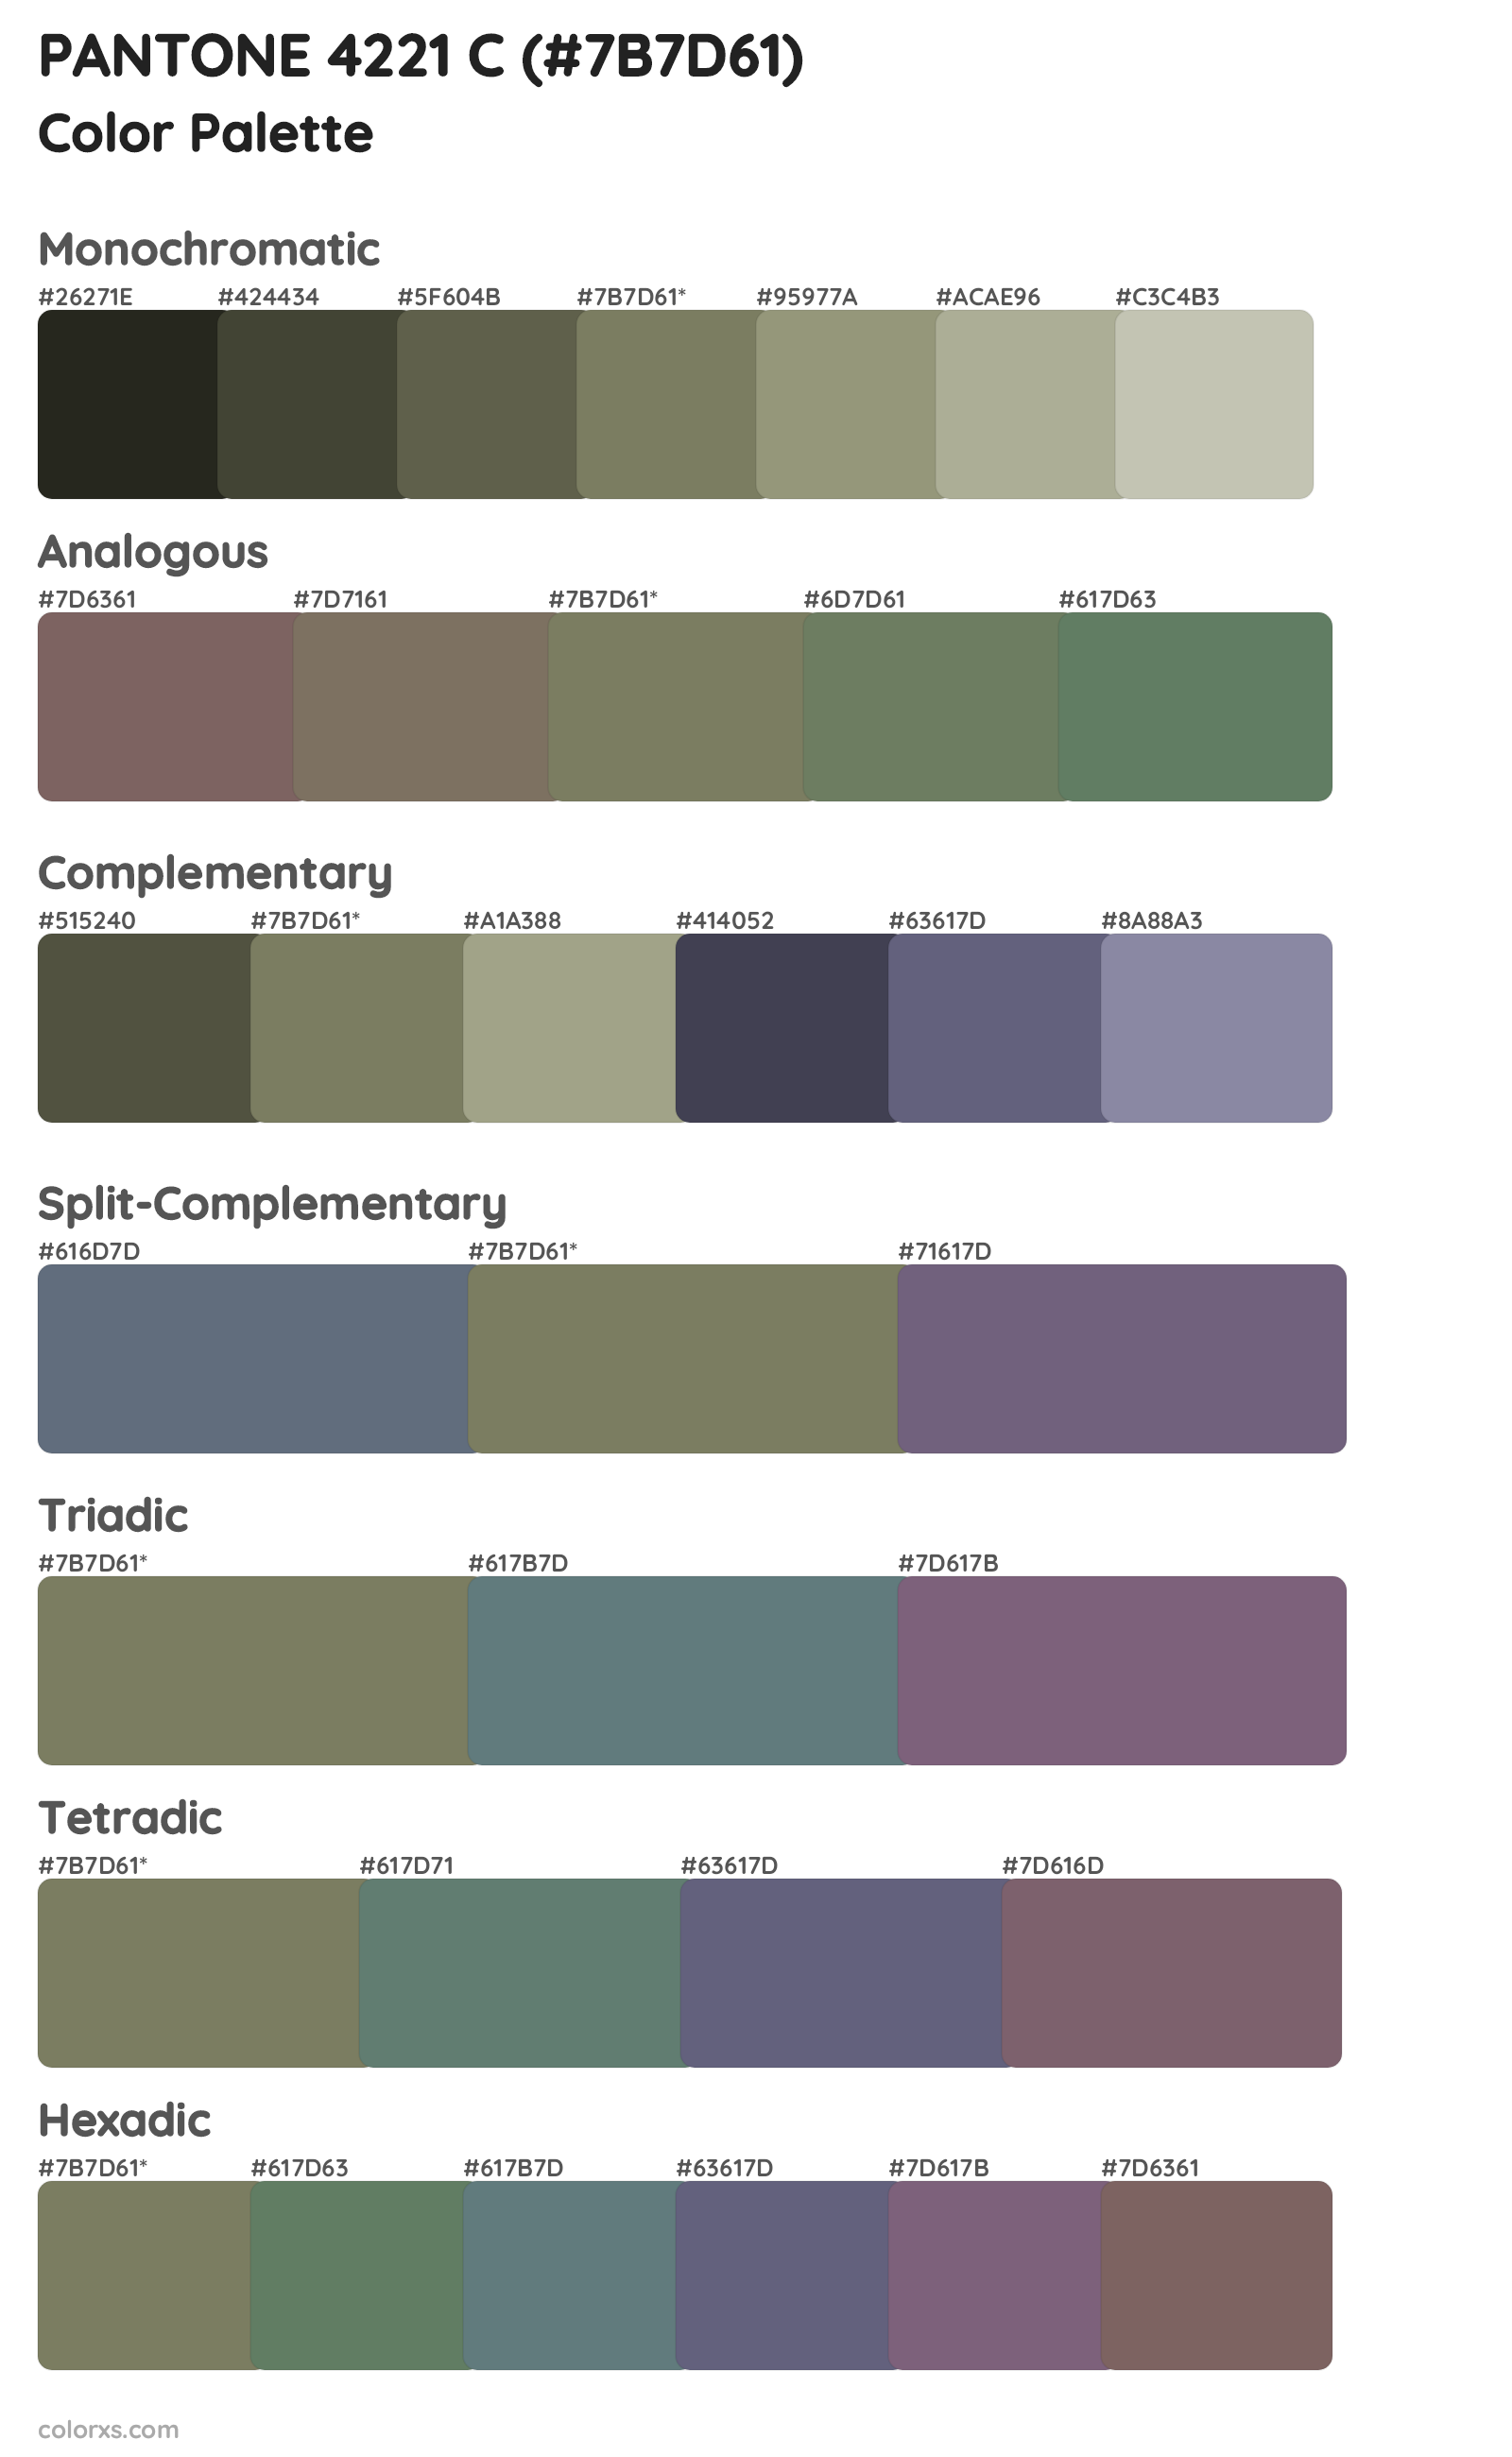 PANTONE 4221 C Color Scheme Palettes